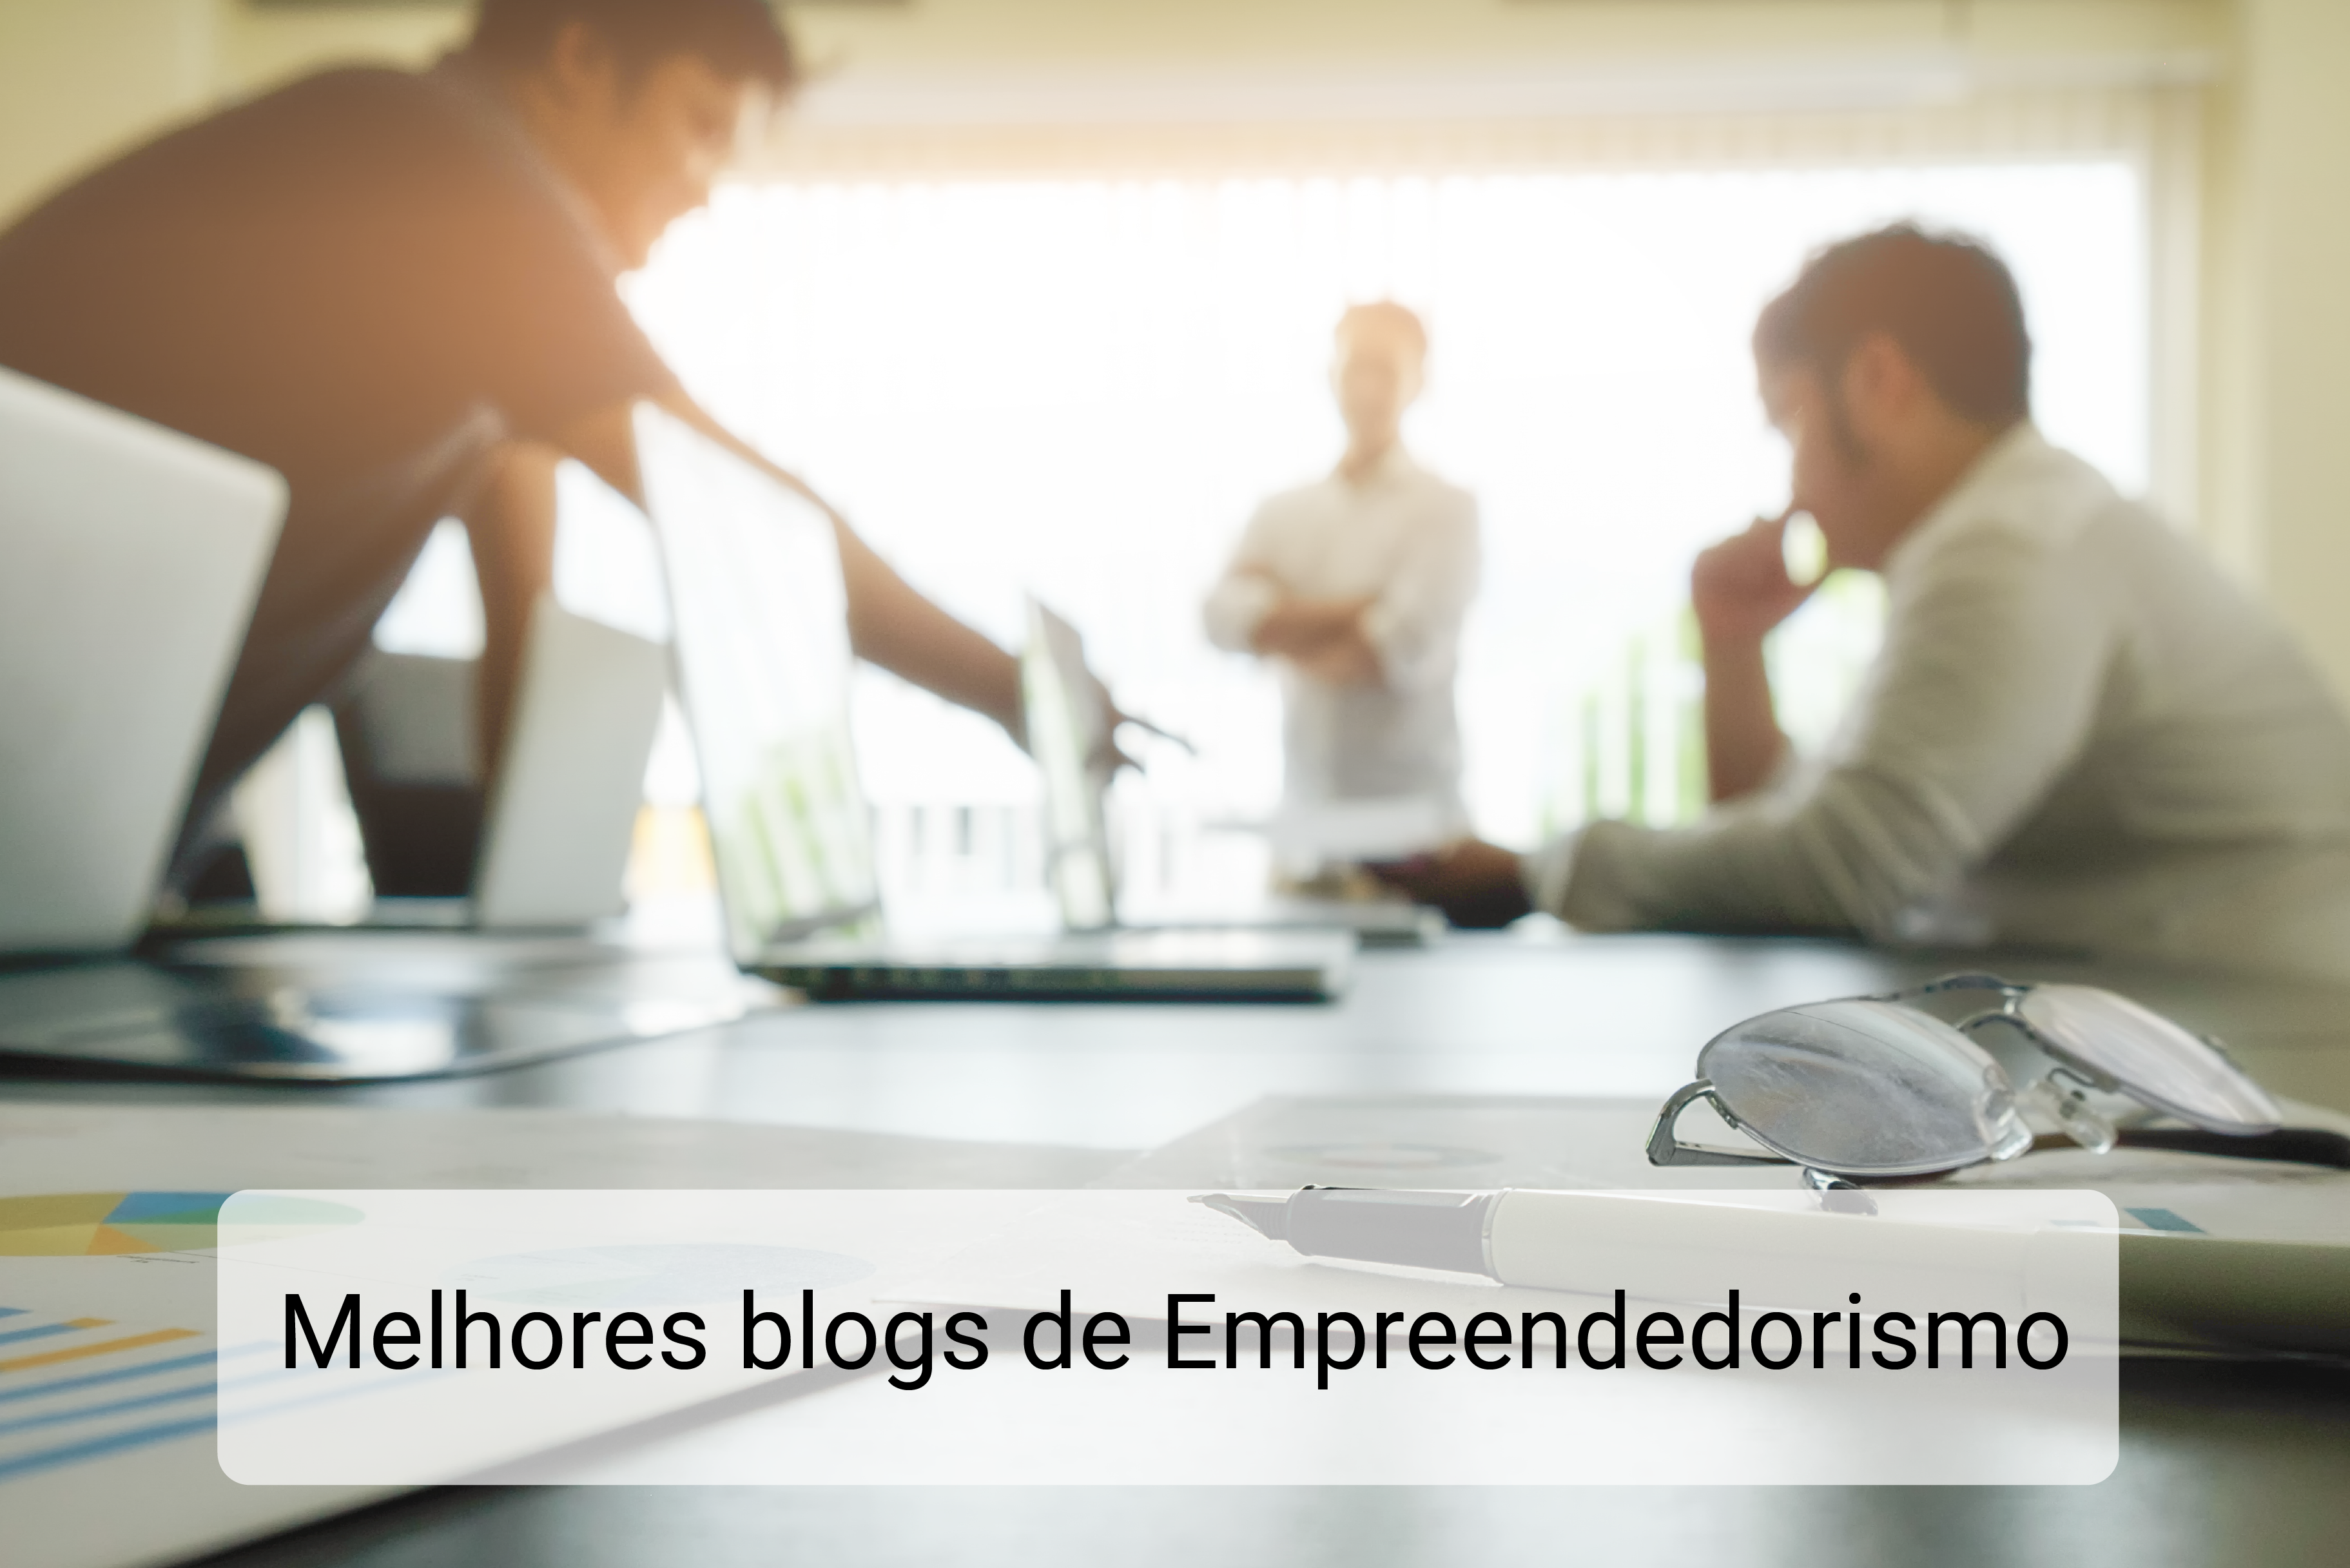 Melhores blogs de Empreendedorismo que todo empreendedor deveria ler